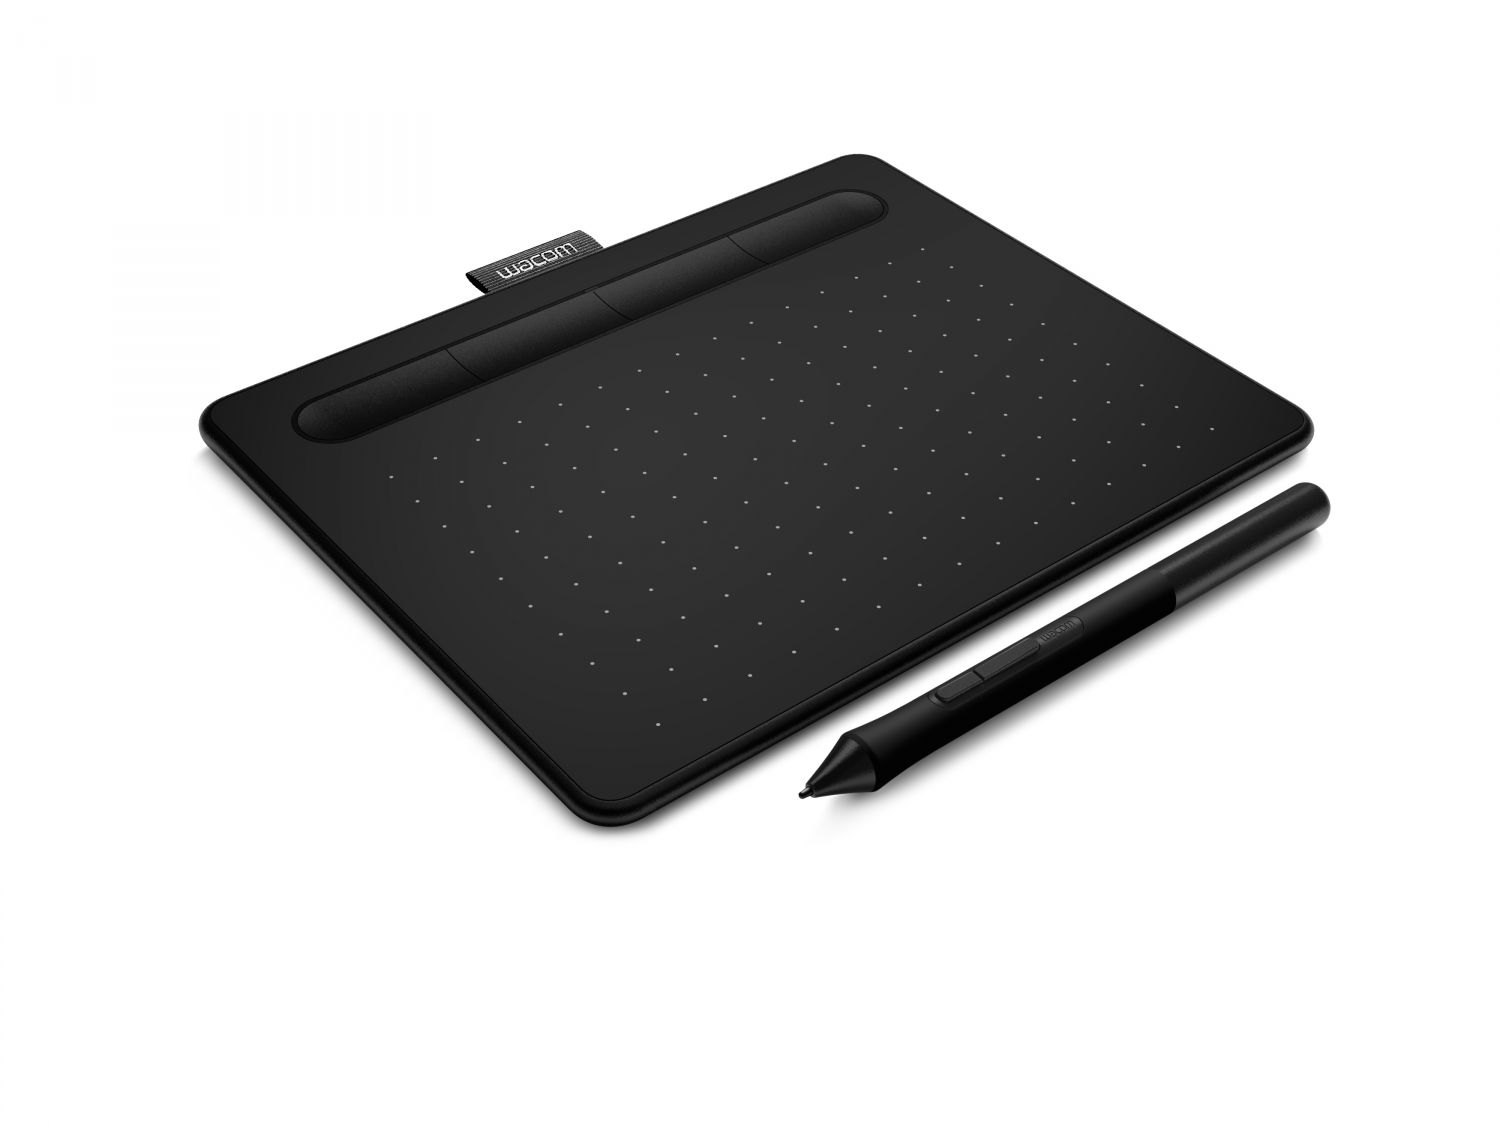 CTL-4100WLK-S - Tableta grfica Wacom Intuos Bluetooth tableta digitalizadora 2540 lnea por pulgada 152 x 95 mm USB/Bluetooth Negro